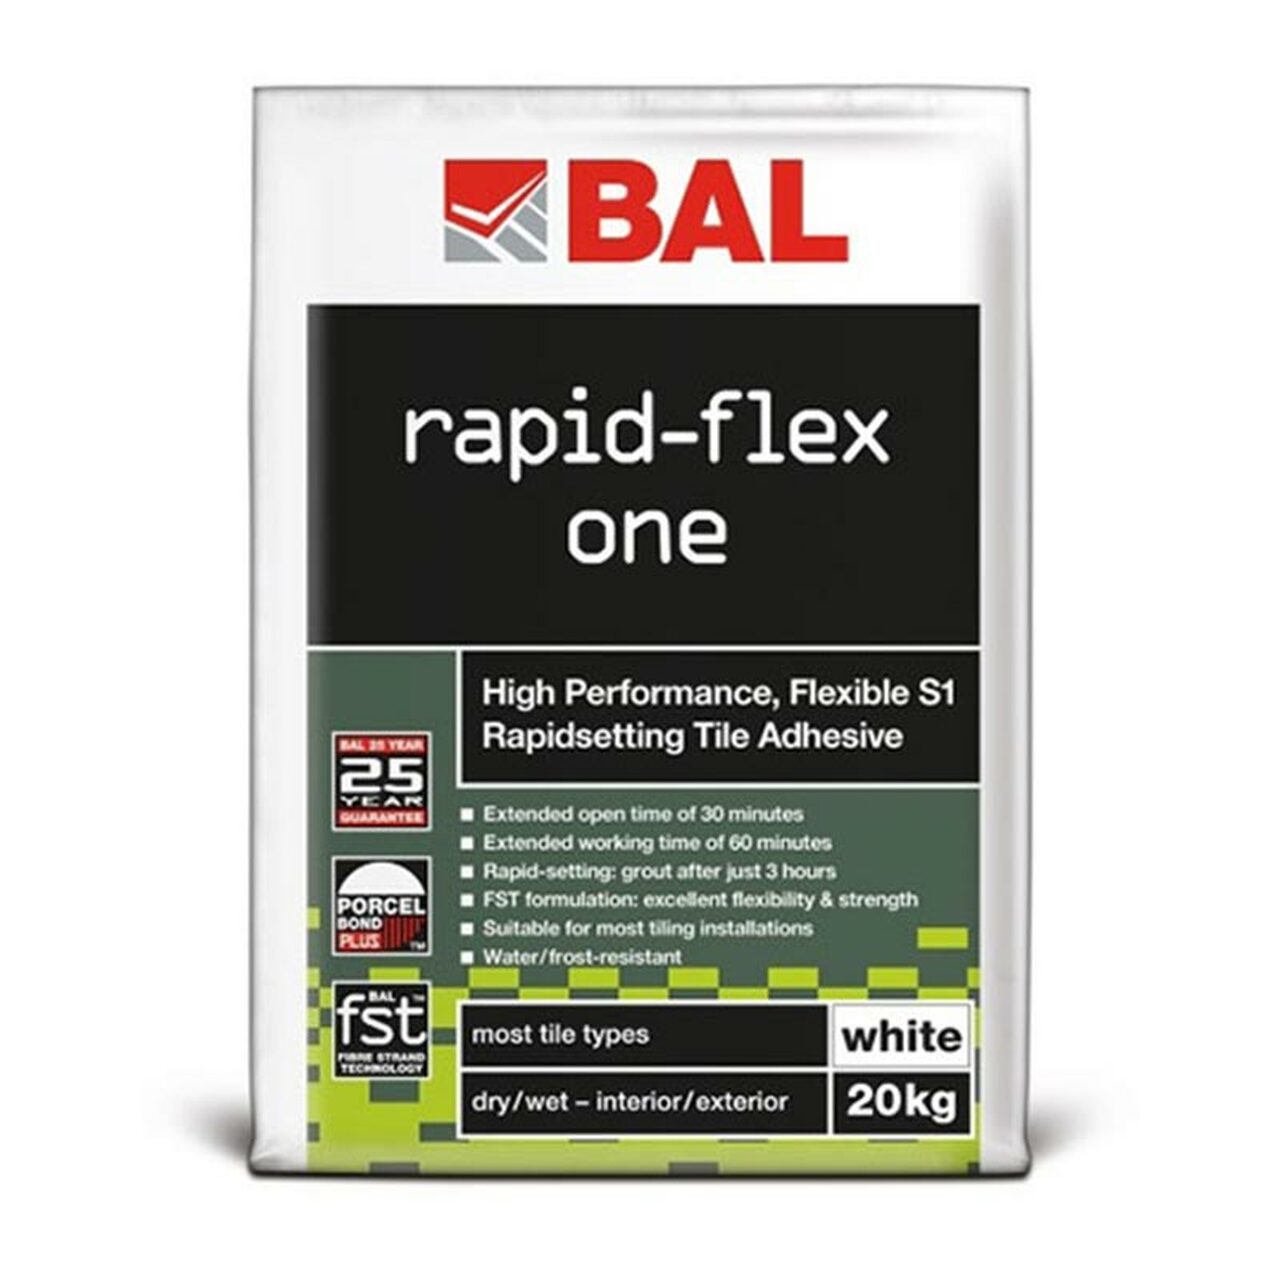 BAL Rapid-Flex One 20KG